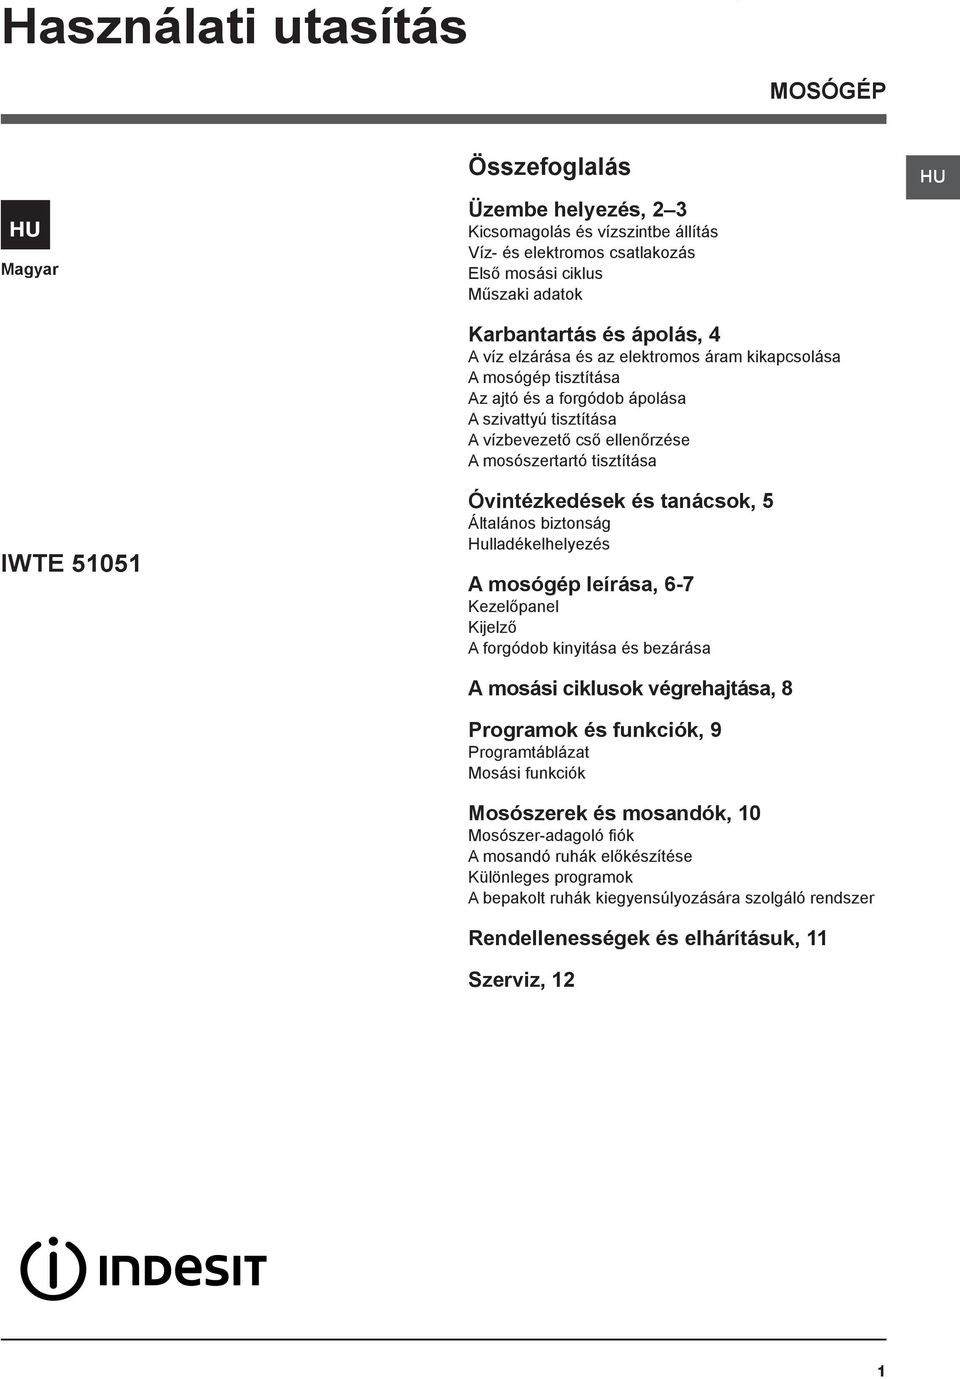 Használati utasítás. Összefoglalás IWTE MOSÓGÉP - PDF Ingyenes letöltés